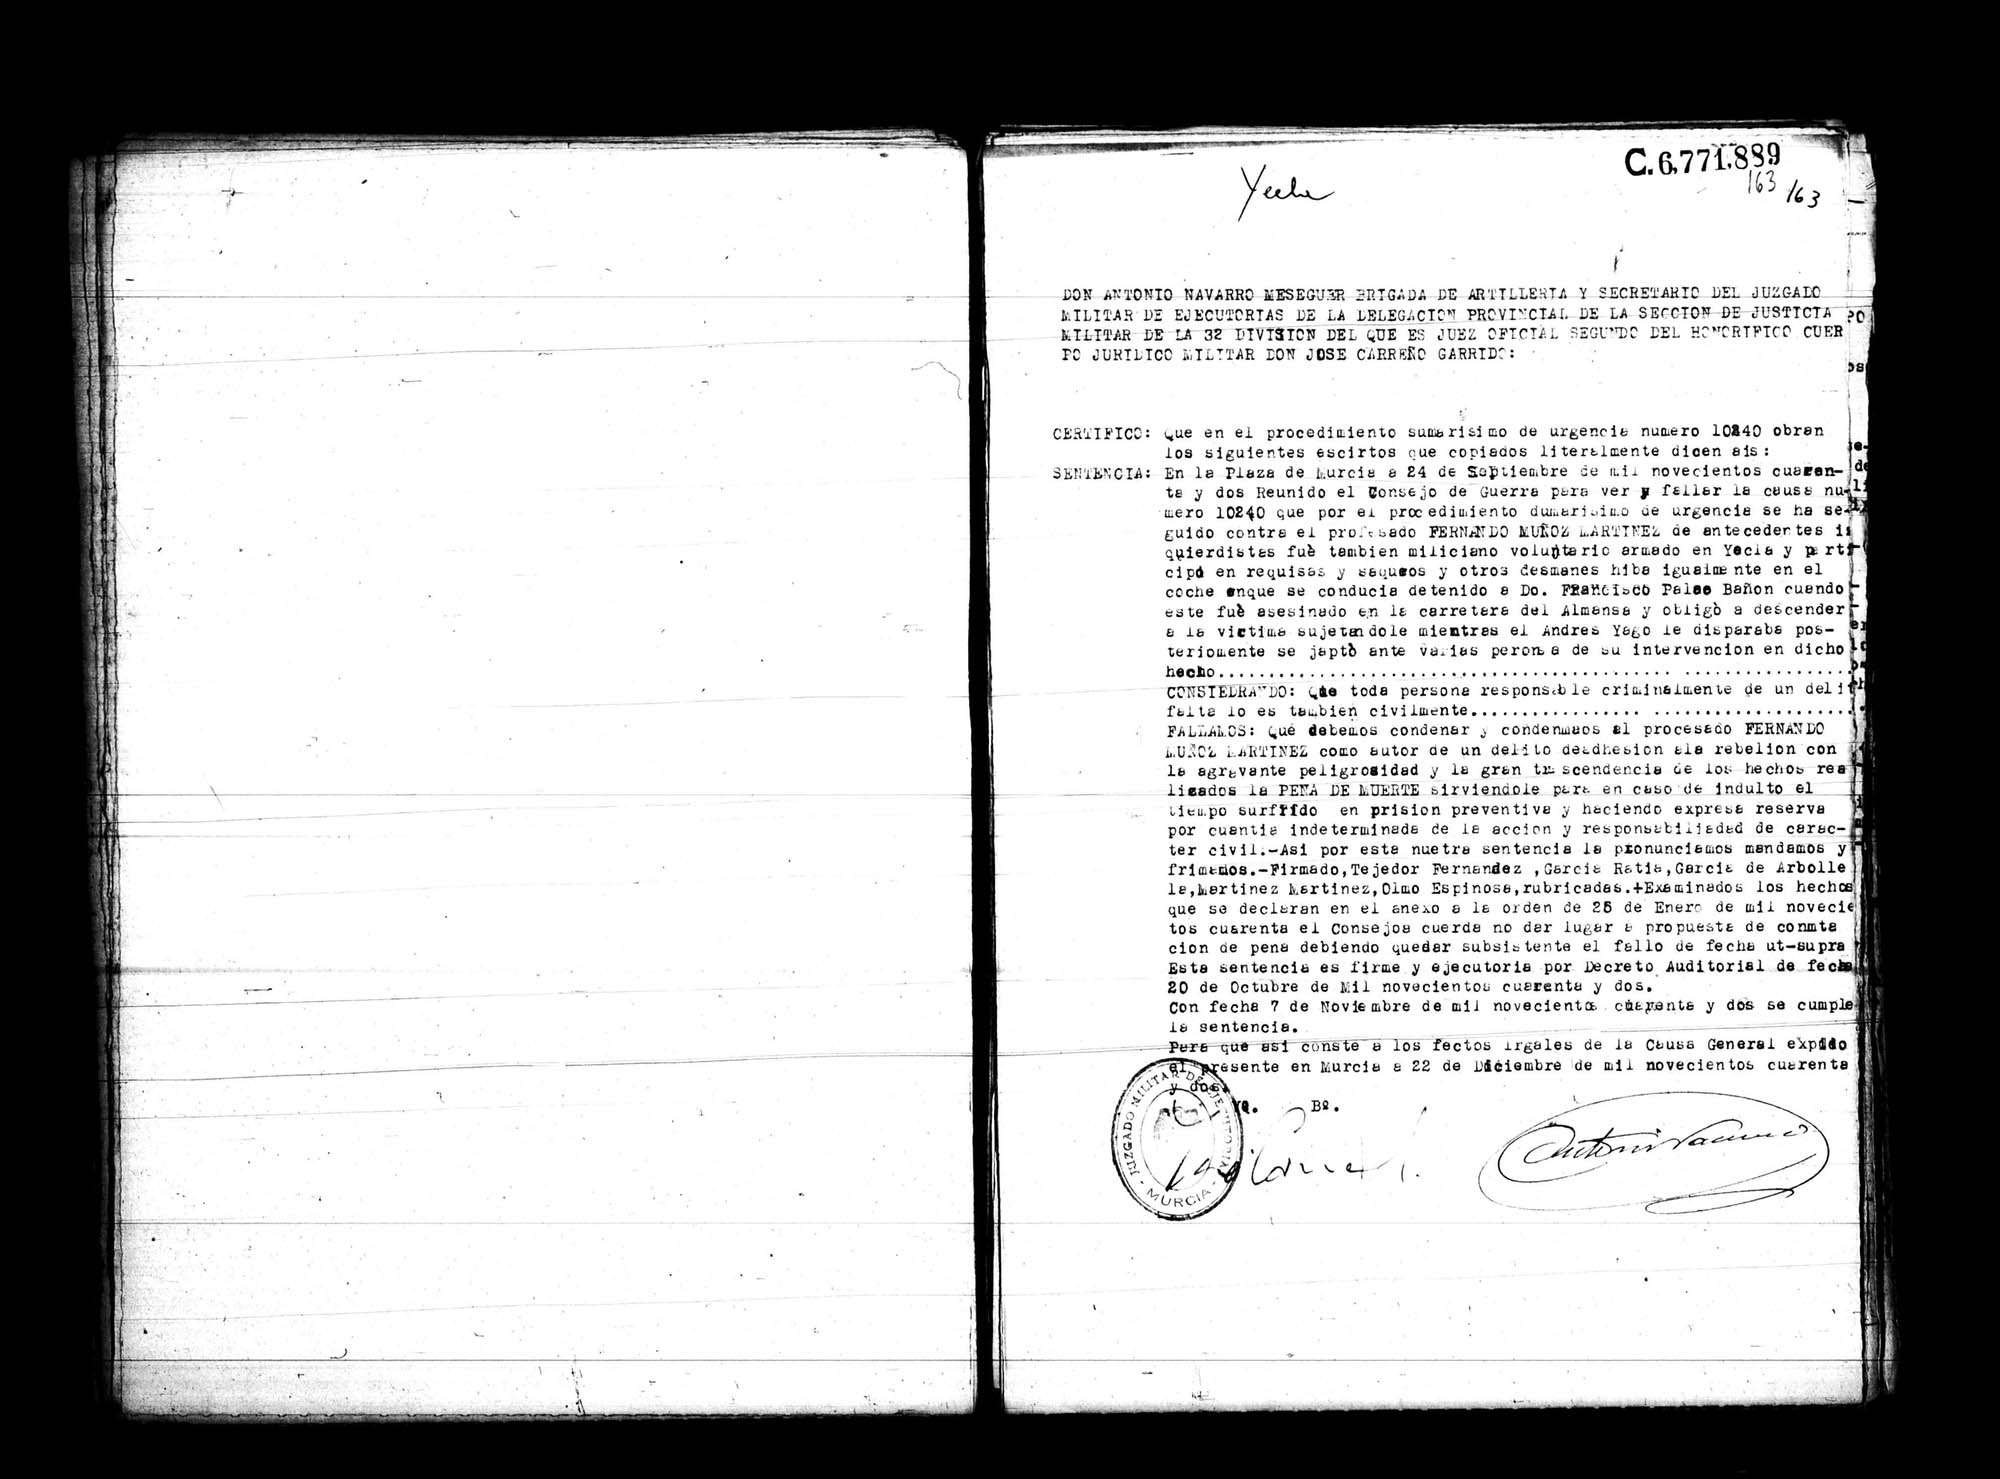 Certificado de la sentencia pronunciada contra Fernando Muñoz Martínez, causa 10240, el 24 de septiembre de 1942 en Murcia.